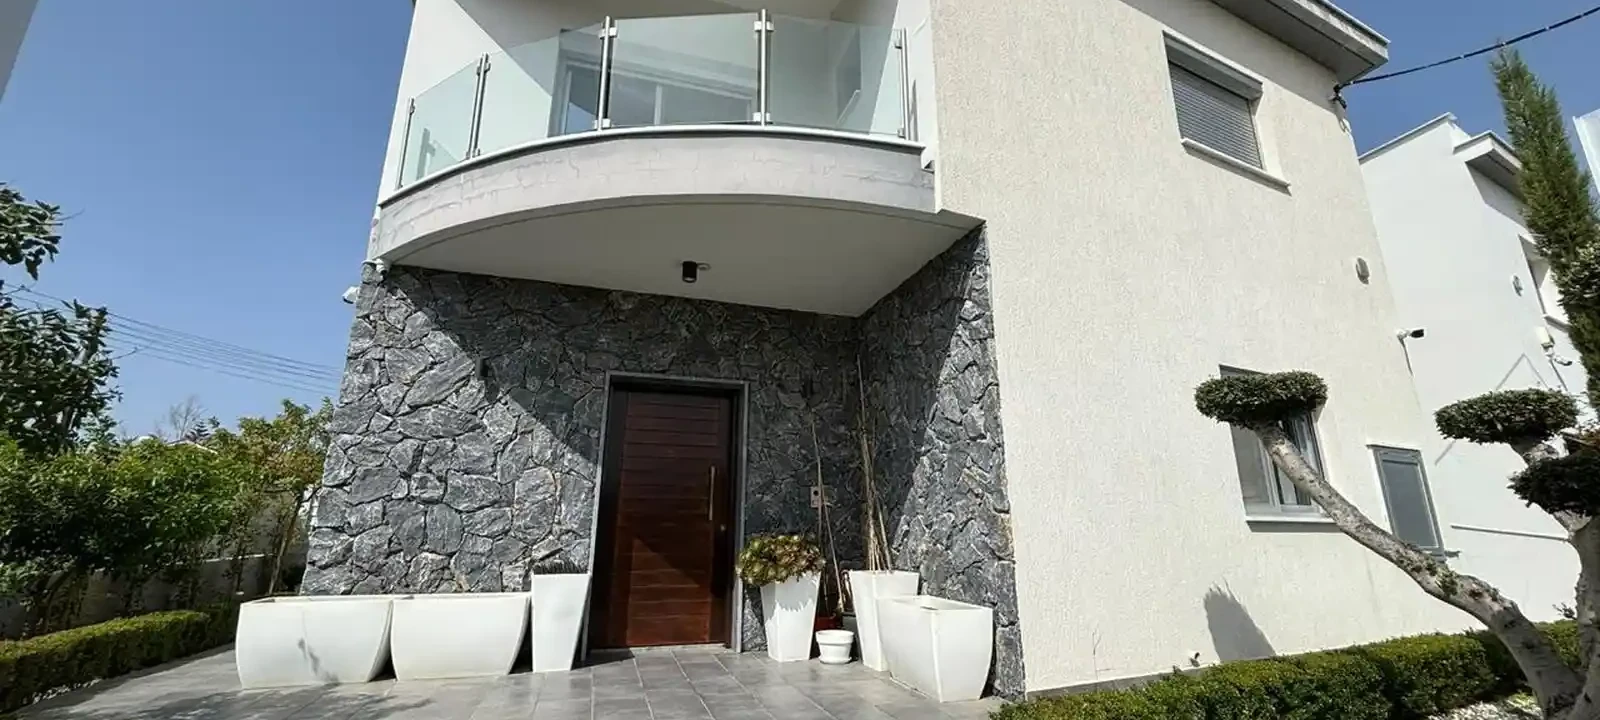 3-bedroom detached house fоr sаle €520.000, image 1